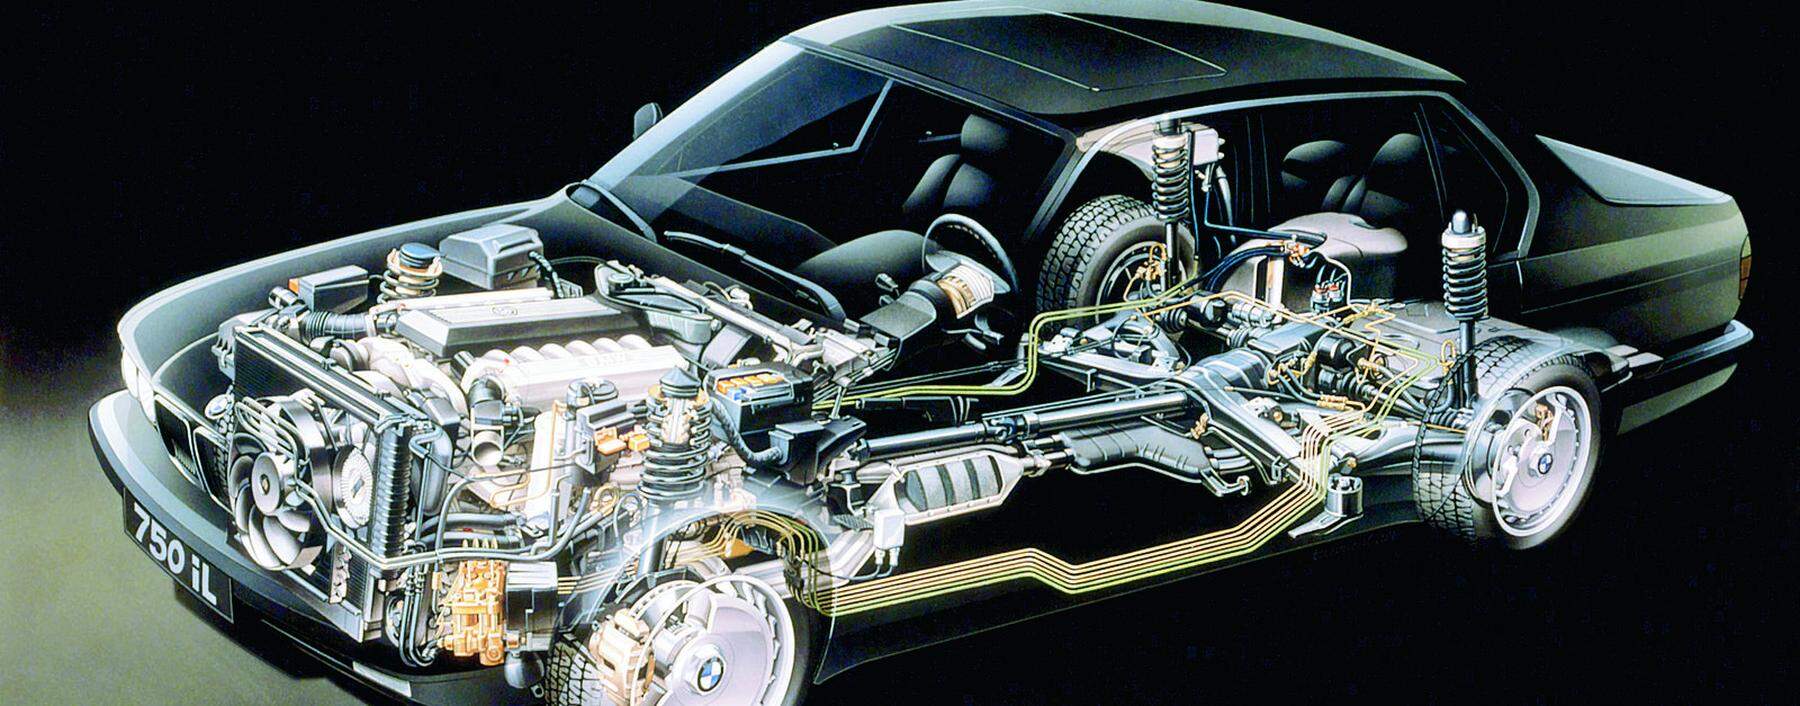 Durchschaut: Mit dem ersten deutschen Nachkriegs- Zwölfzylinder landete BMW 1987 (hier im Spitzenmodell 750iL) einen Coup.